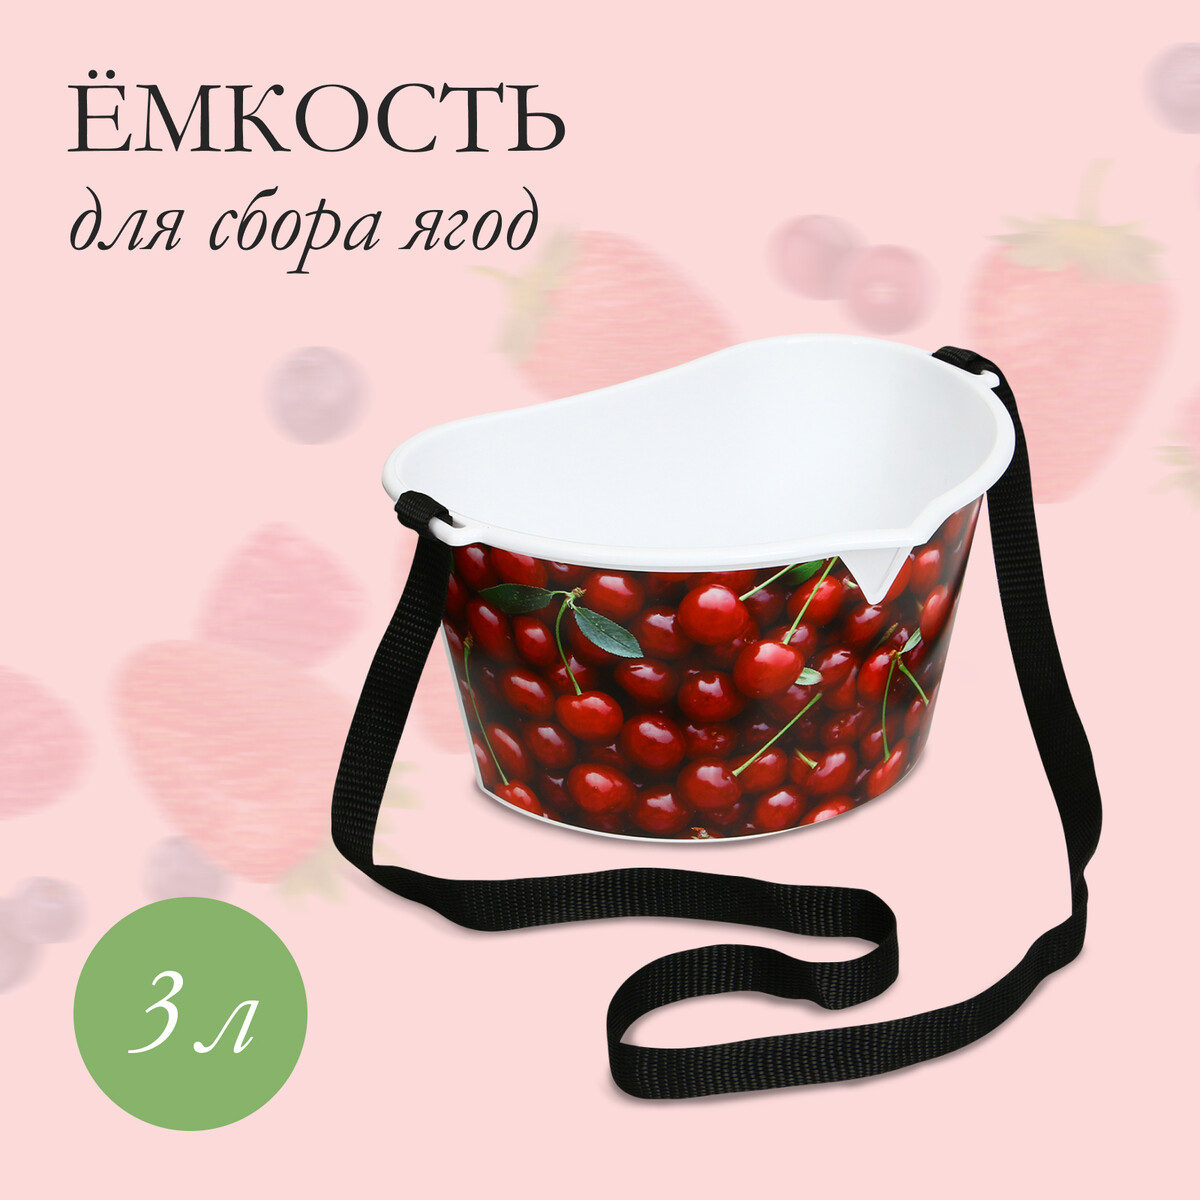 Ёмкость для сбора ягод, 3 л, ёмкость для соуса 300 мл 6×19 см красный